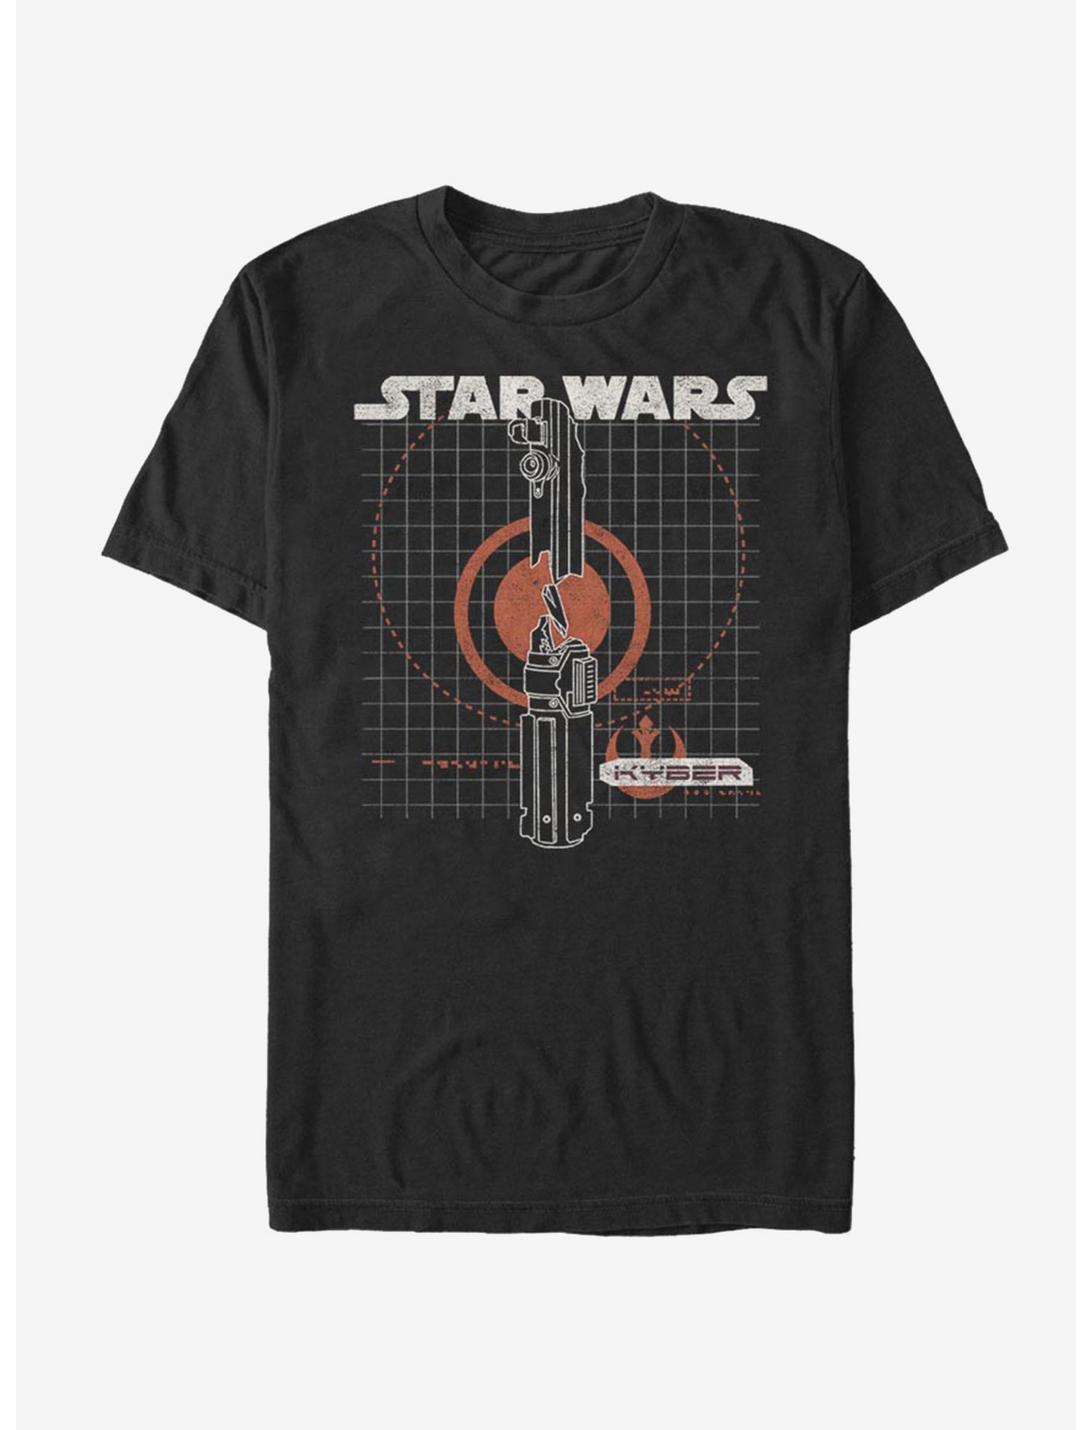 Star Wars Episode IX The Rise Of Skywalker Kyber Crystal T-Shirt, BLACK, hi-res